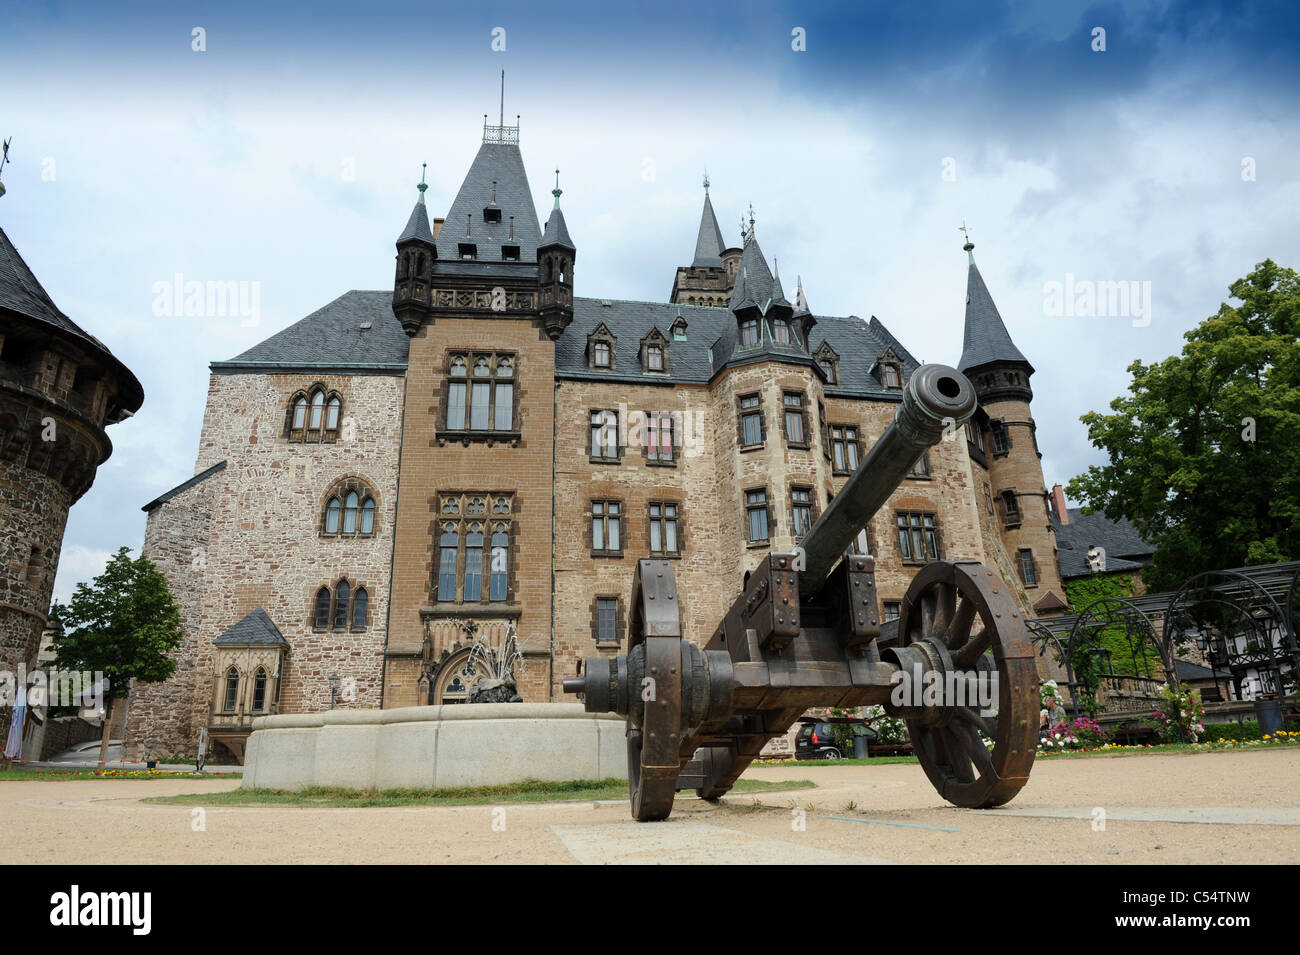 Château de Wernigerode Harz dans le district de Saxe-anhalt Allemagne Allemagne Deutschland Banque D'Images